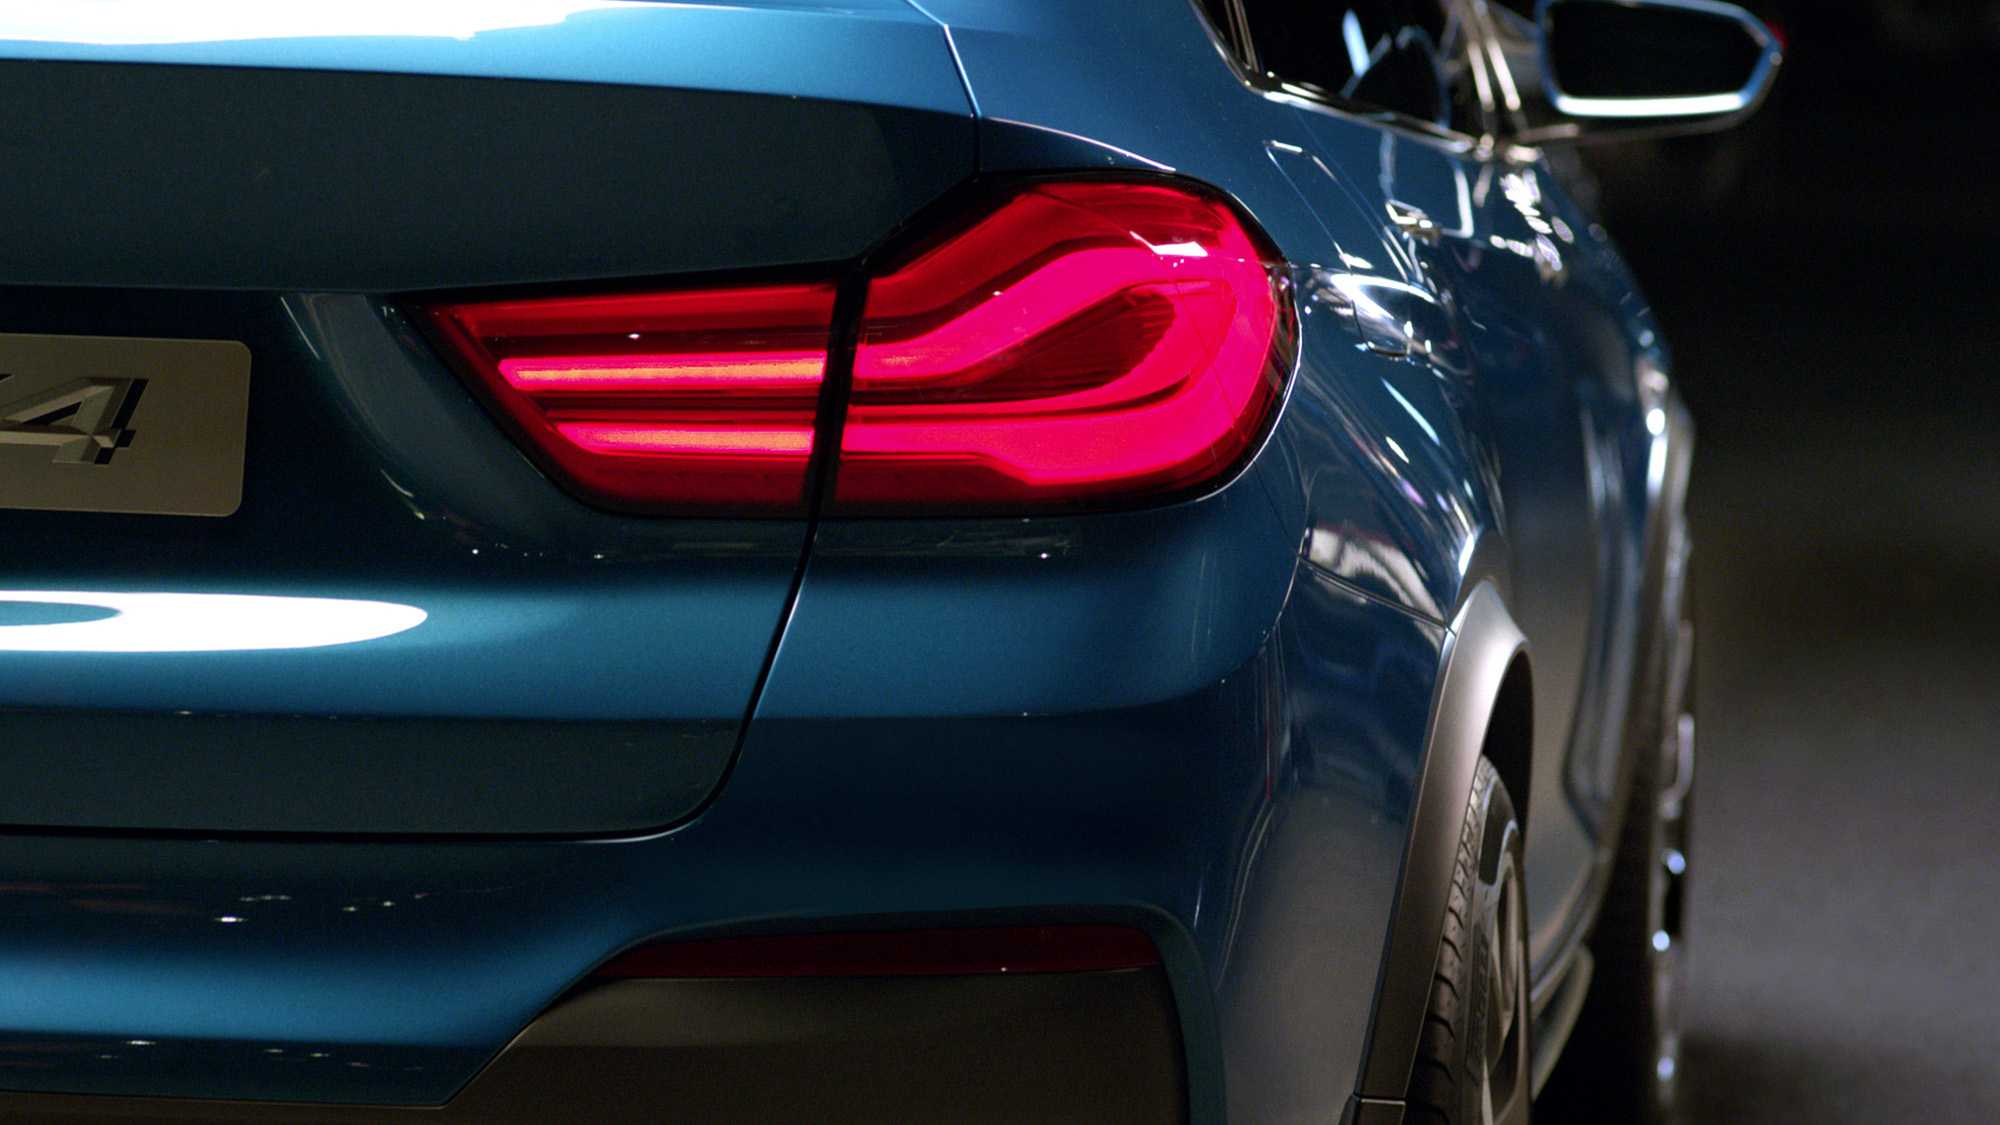 Das Bild zeigt das rechte, hintere Licht eines BMW´s. Dieser ist blau. Das Bild dient als Sliderbild für den Portfolioeintrag BMW Concept X4 von Panda Pictures.